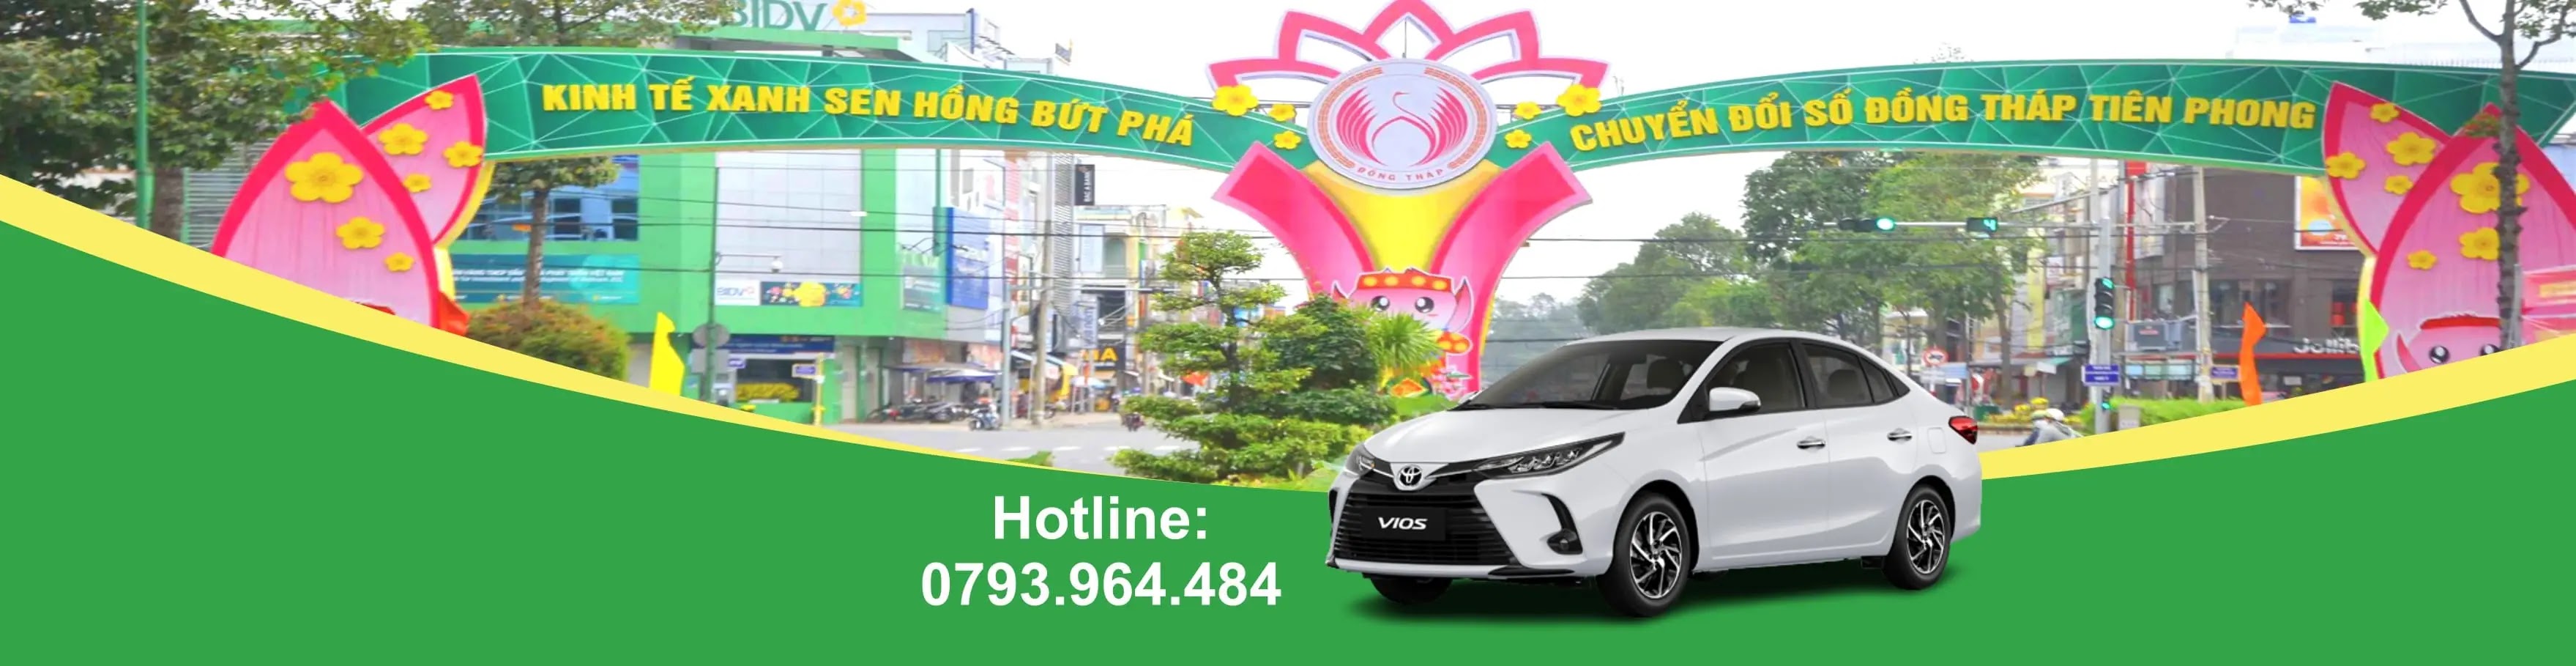 Taxi Đồng Tháp Nhanh